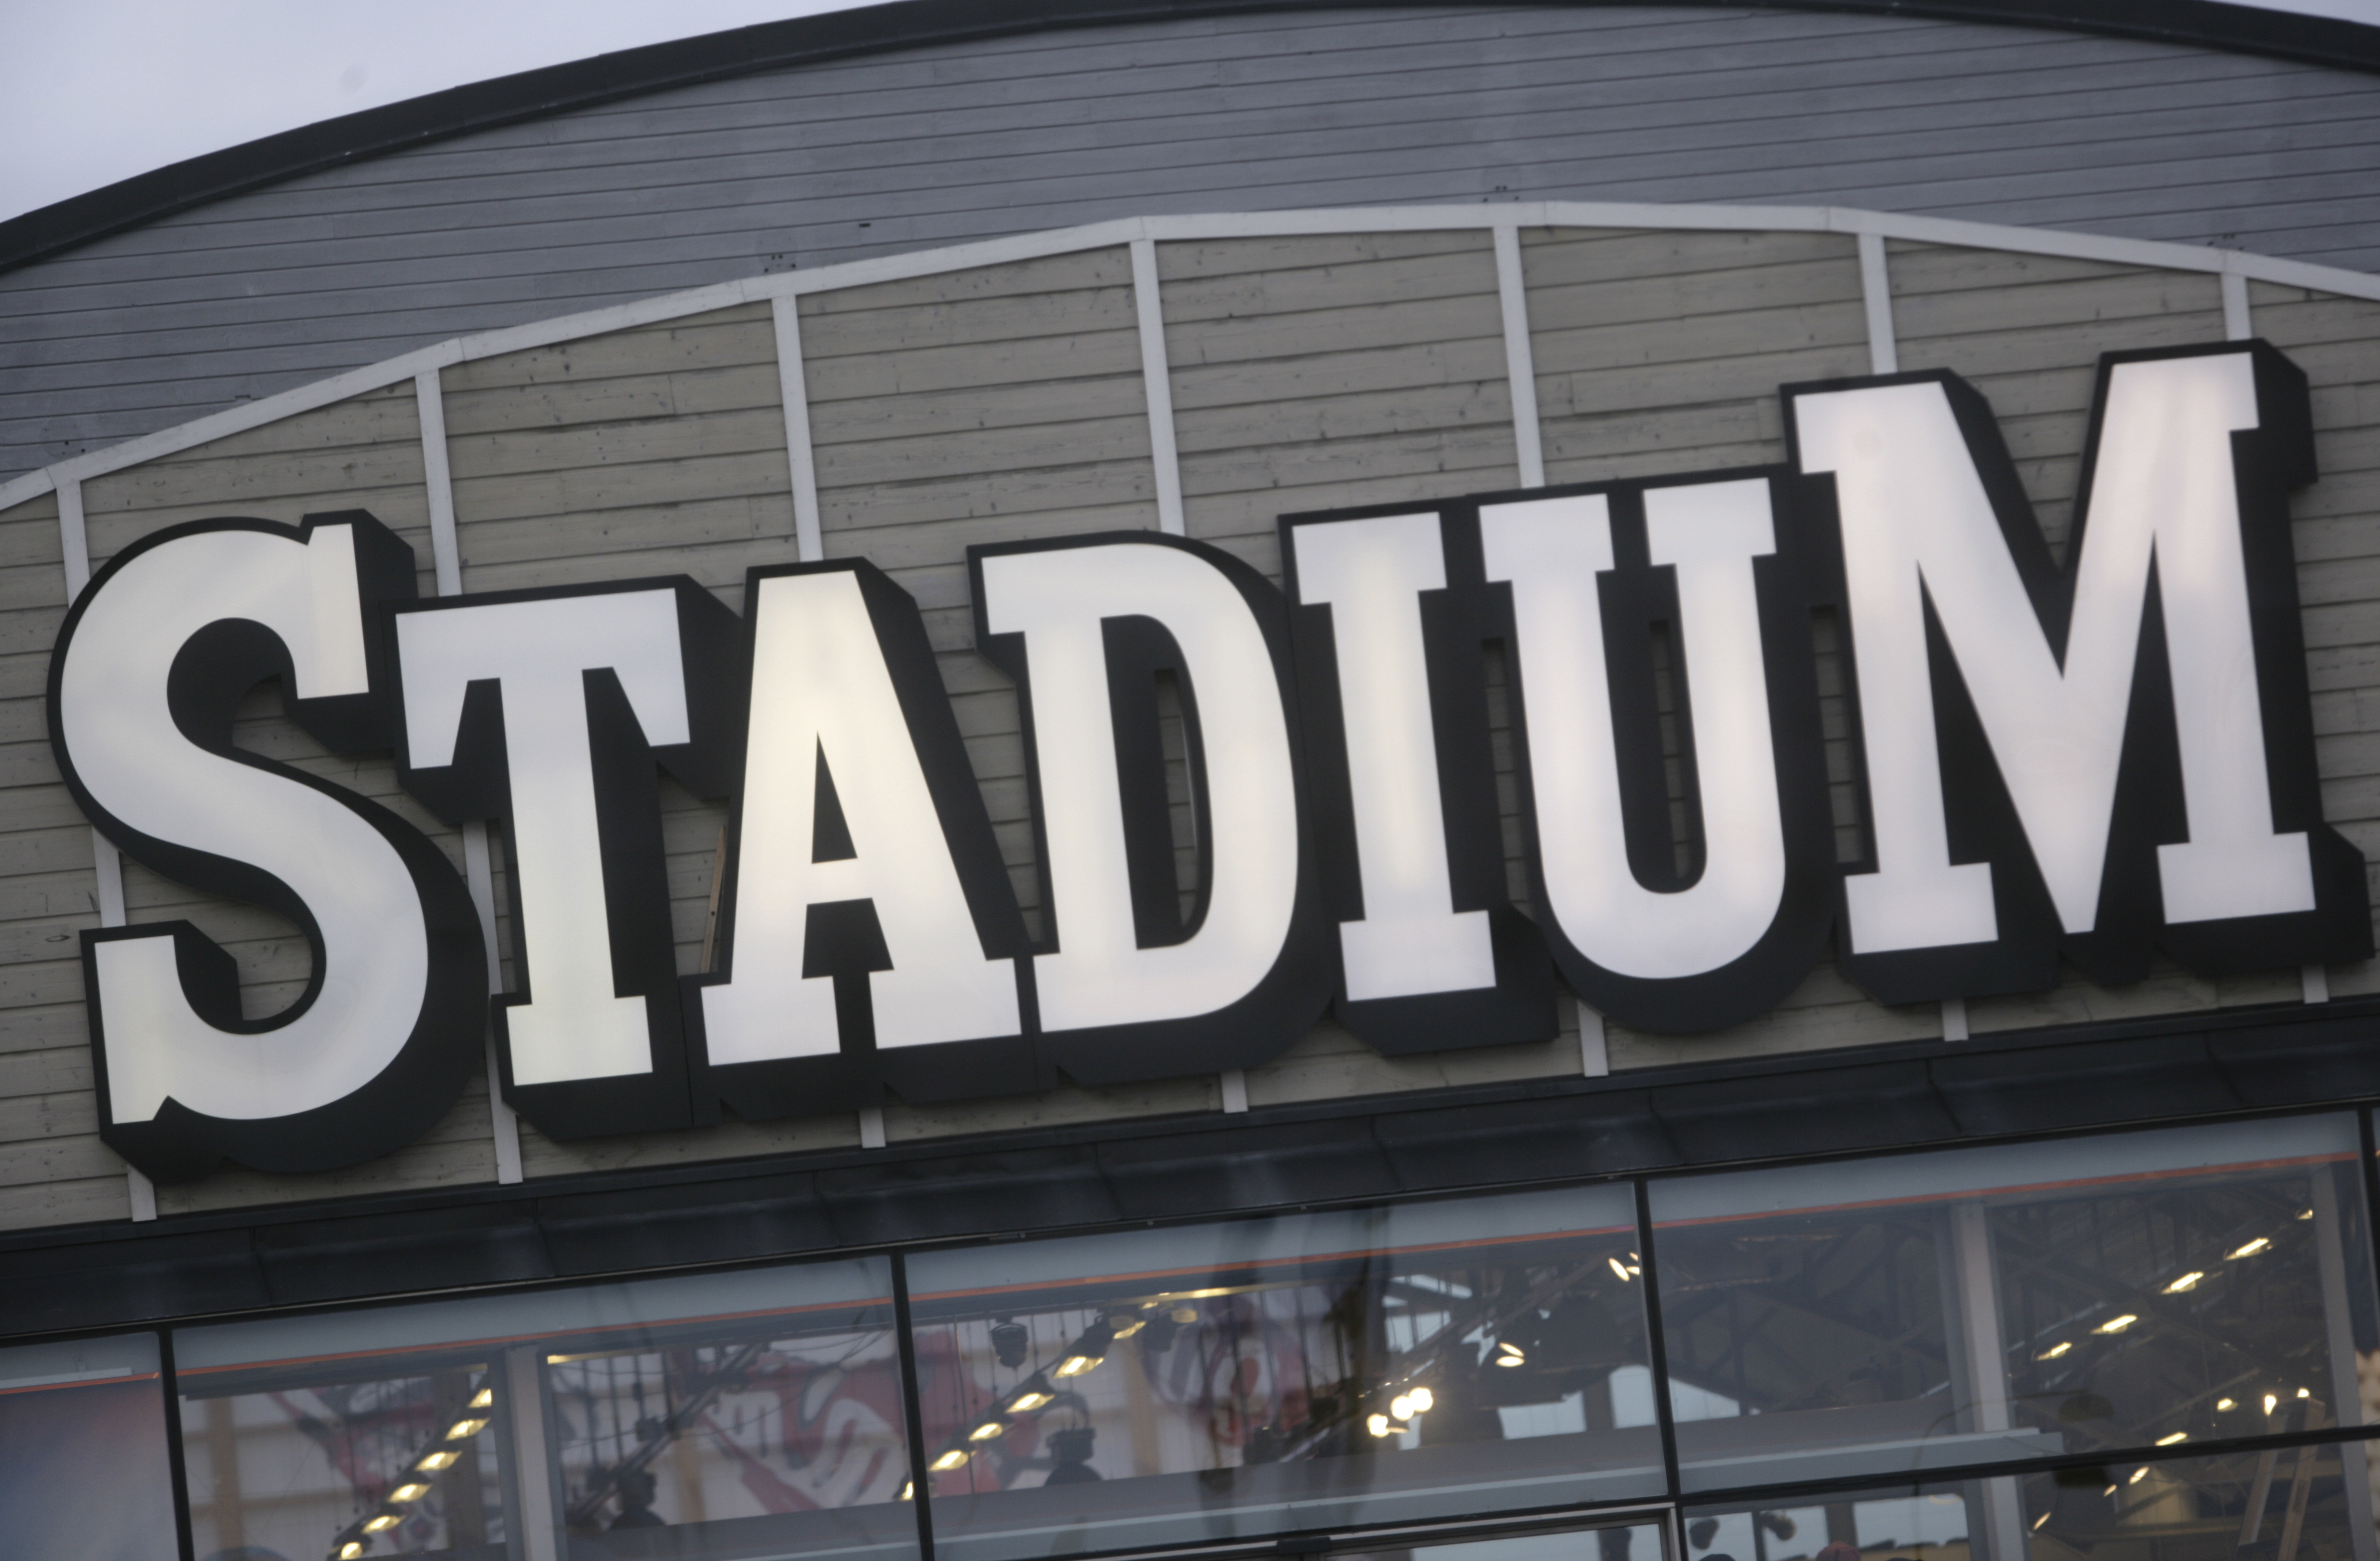 Efter en inventering på Stadium i Karlstad upptäckte butikschefen att det saknade massvis med kalsonger. När man senare påträffade likadana kalsonger i ungefär samma mängd på nätet larmades polisen.